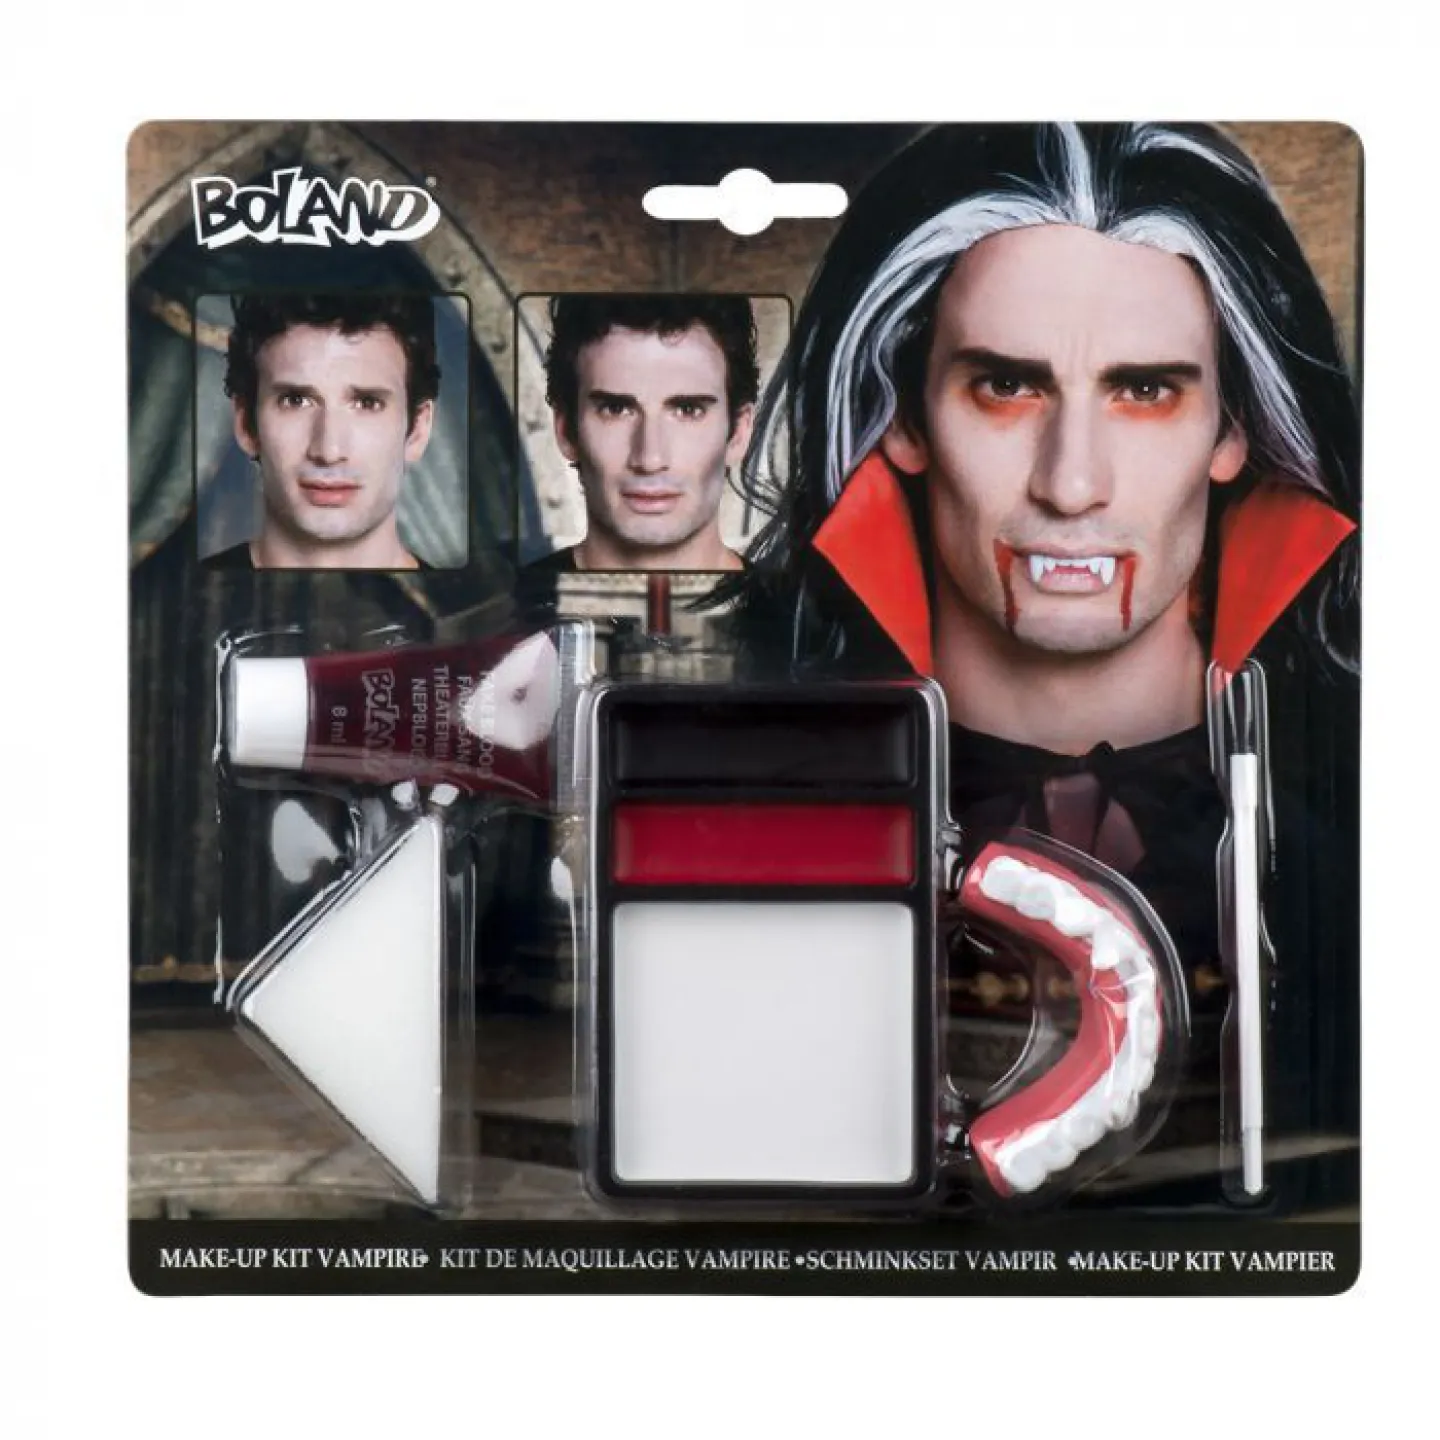 Make-up kit set vampier.